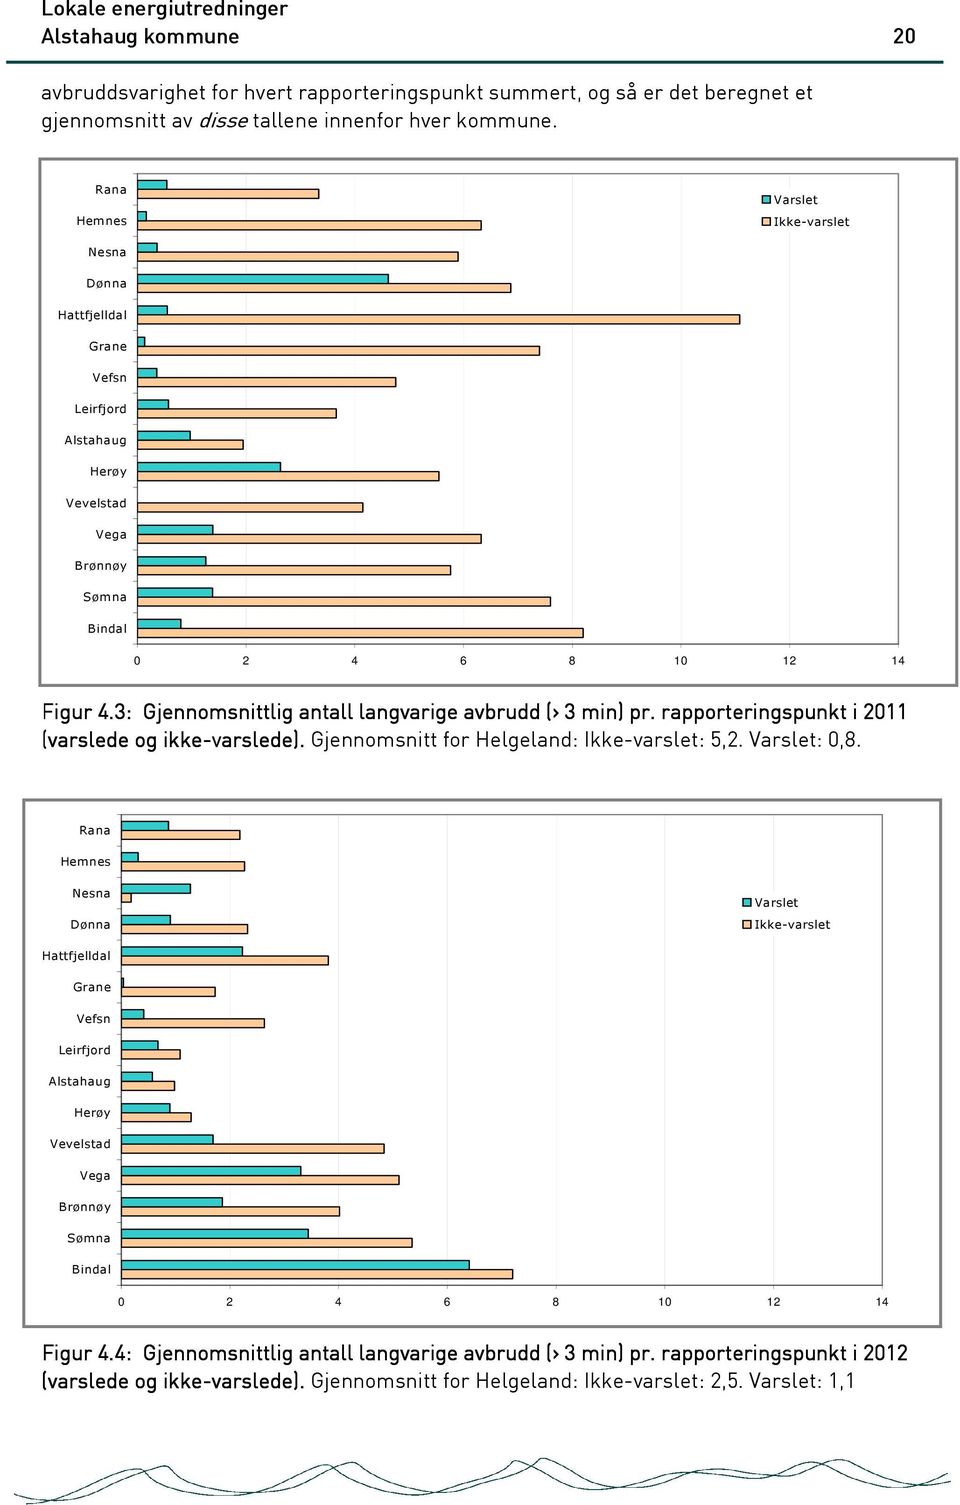 3: Gjennomsnittlig antall langvarige avbrudd (> 3 min) pr. rapporteringspunkt i 2011 (varslede og ikke-varslede). Gjennomsnitt for Helgeland: Ikke-varslet: 5,2. Varslet: 0,8.